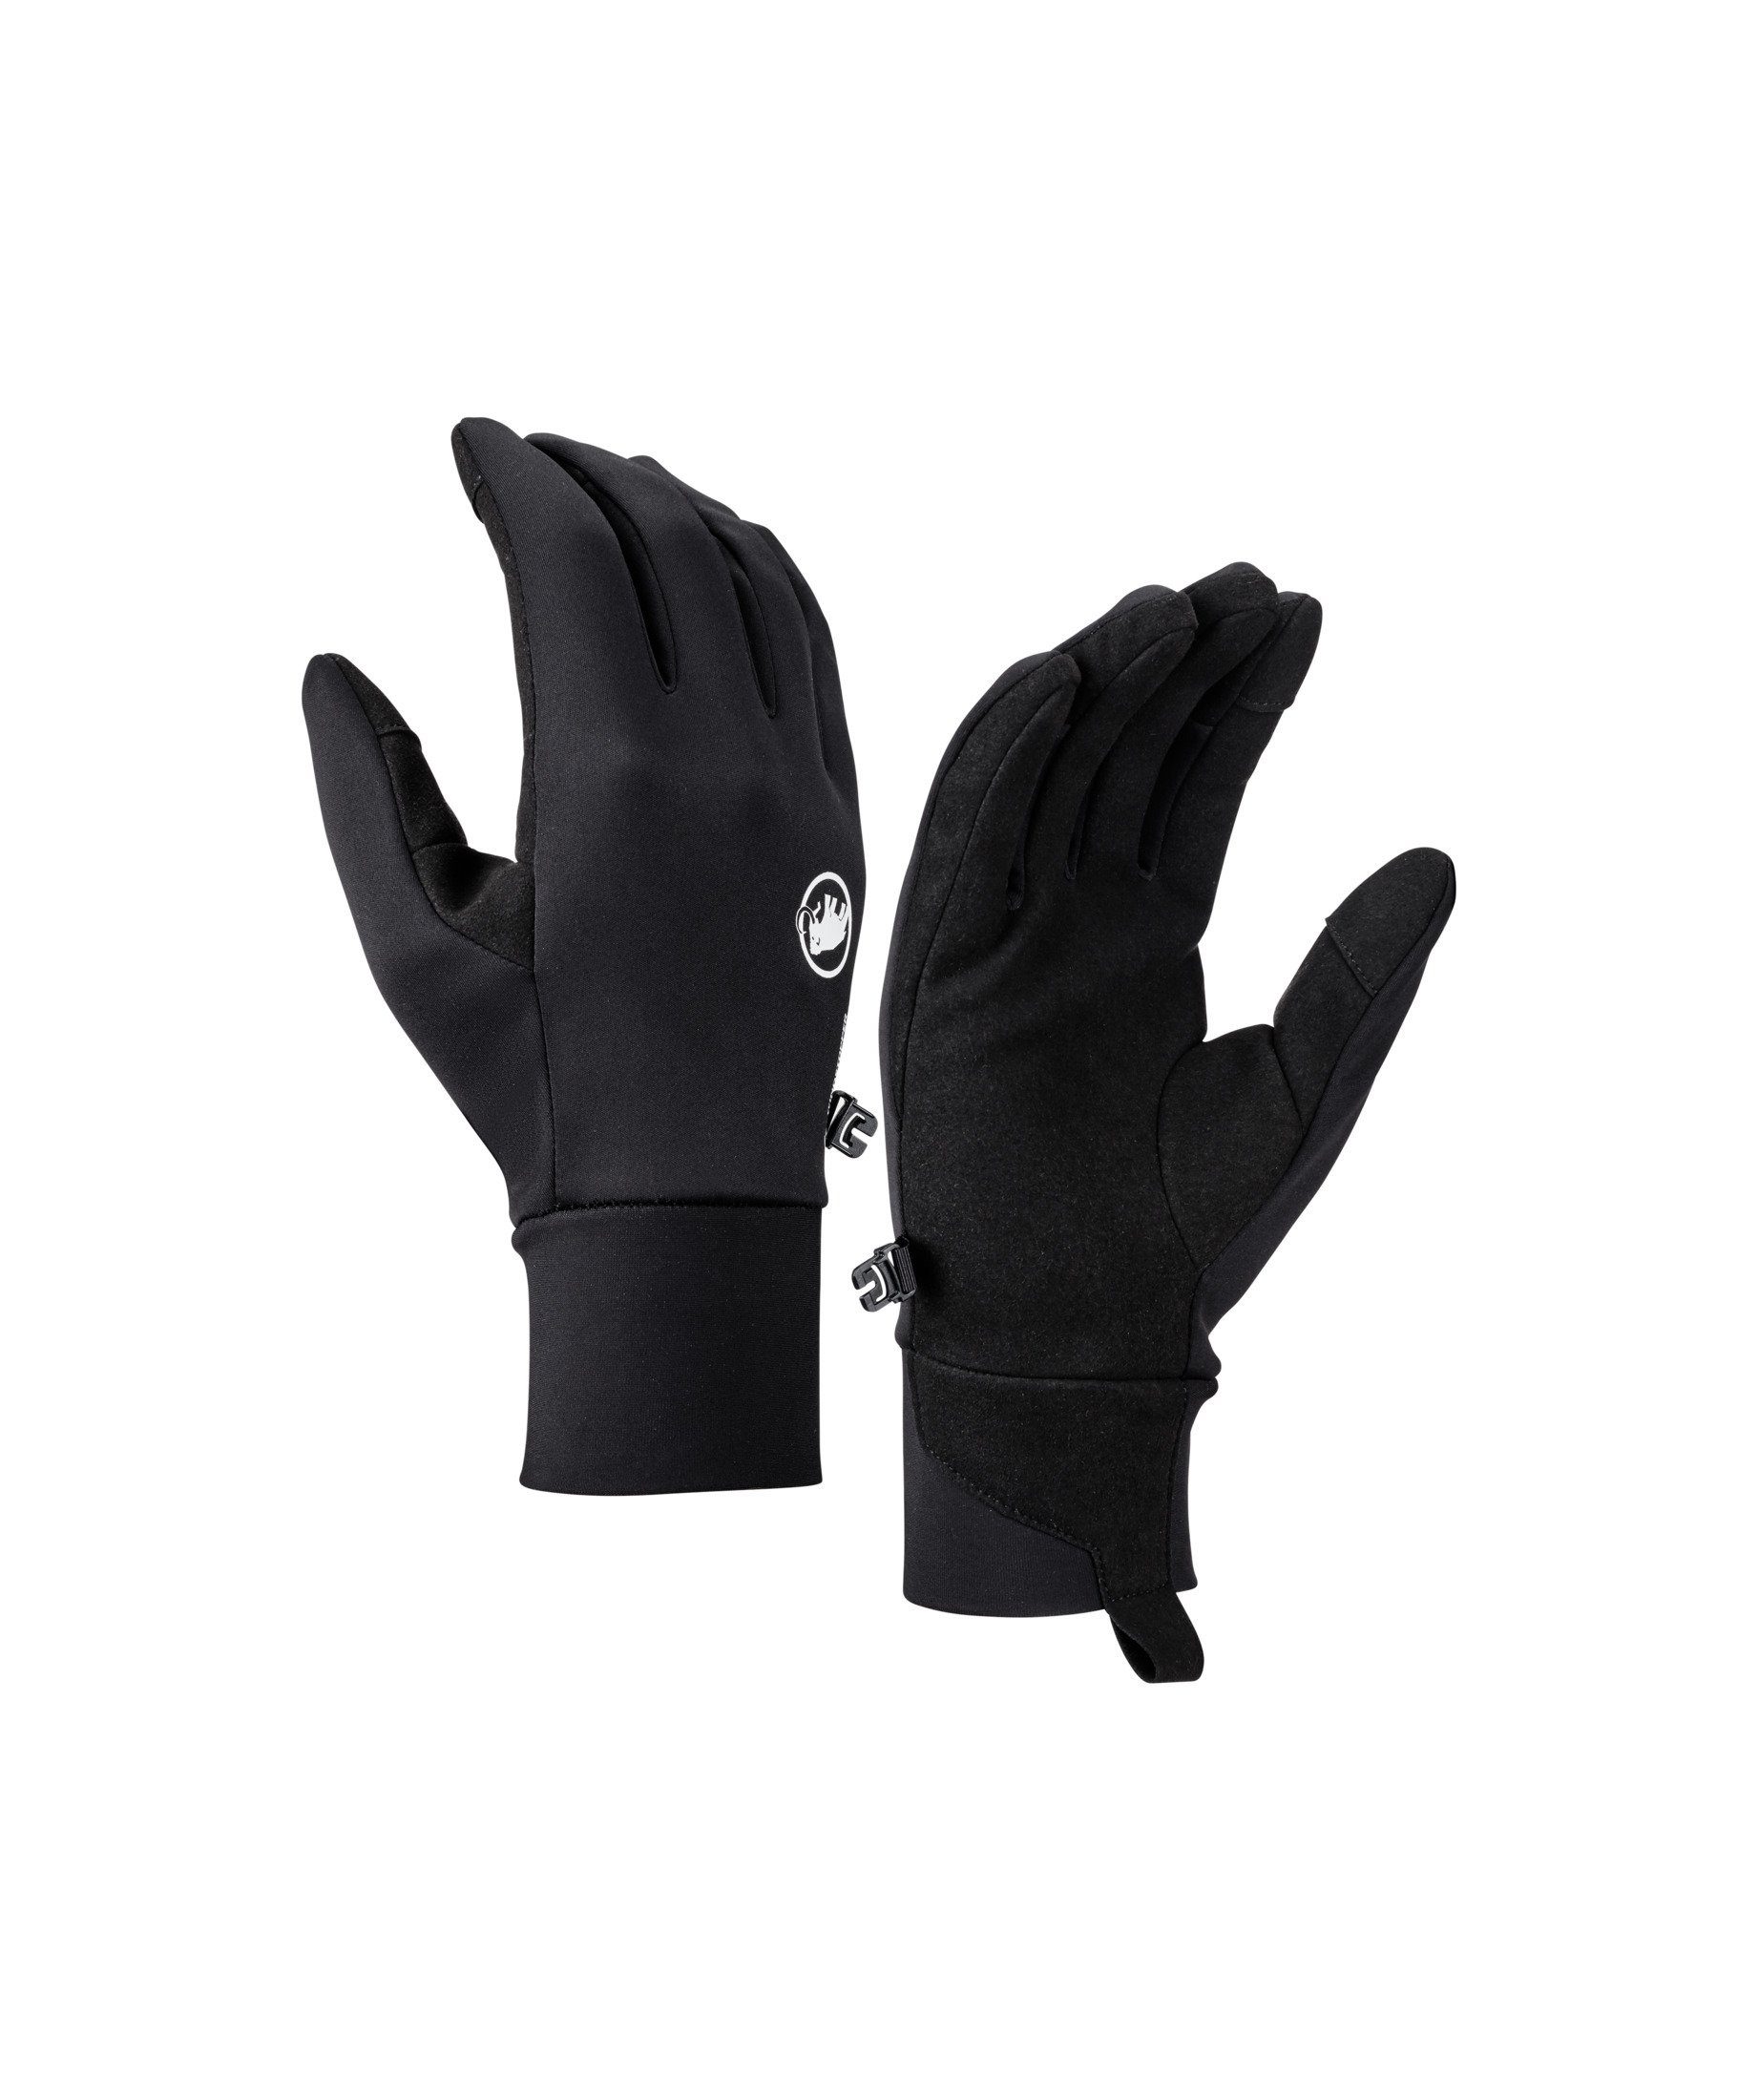 Mammut Multisporthandschuhe Astro Abriebfestigkeit Glove, Synthetikleder aus bessere Astro Handfläche robustem für Glove